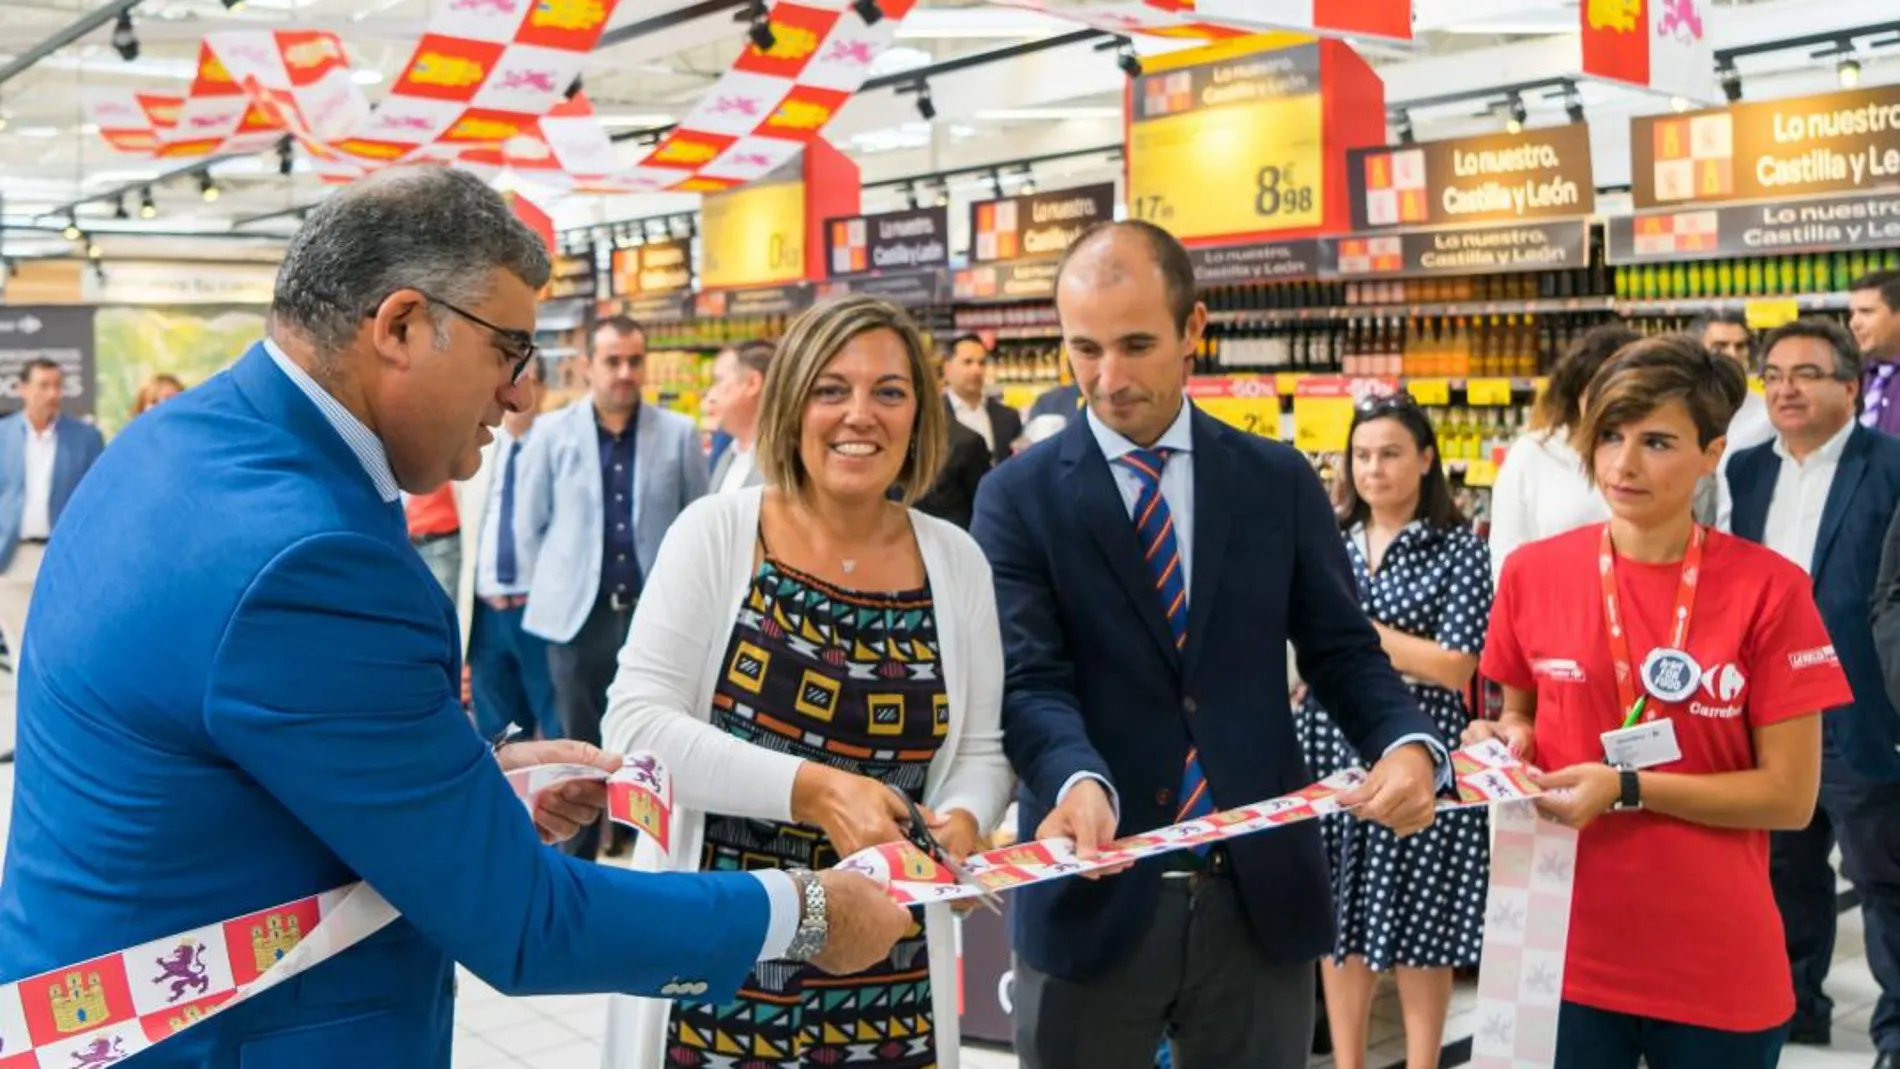 La consejera de Agricultura y Ganadería, Milagros Marcos, inaugura la muestra de productos de Castilla y León en uno de los supermercados de Carrefour de Valladolid